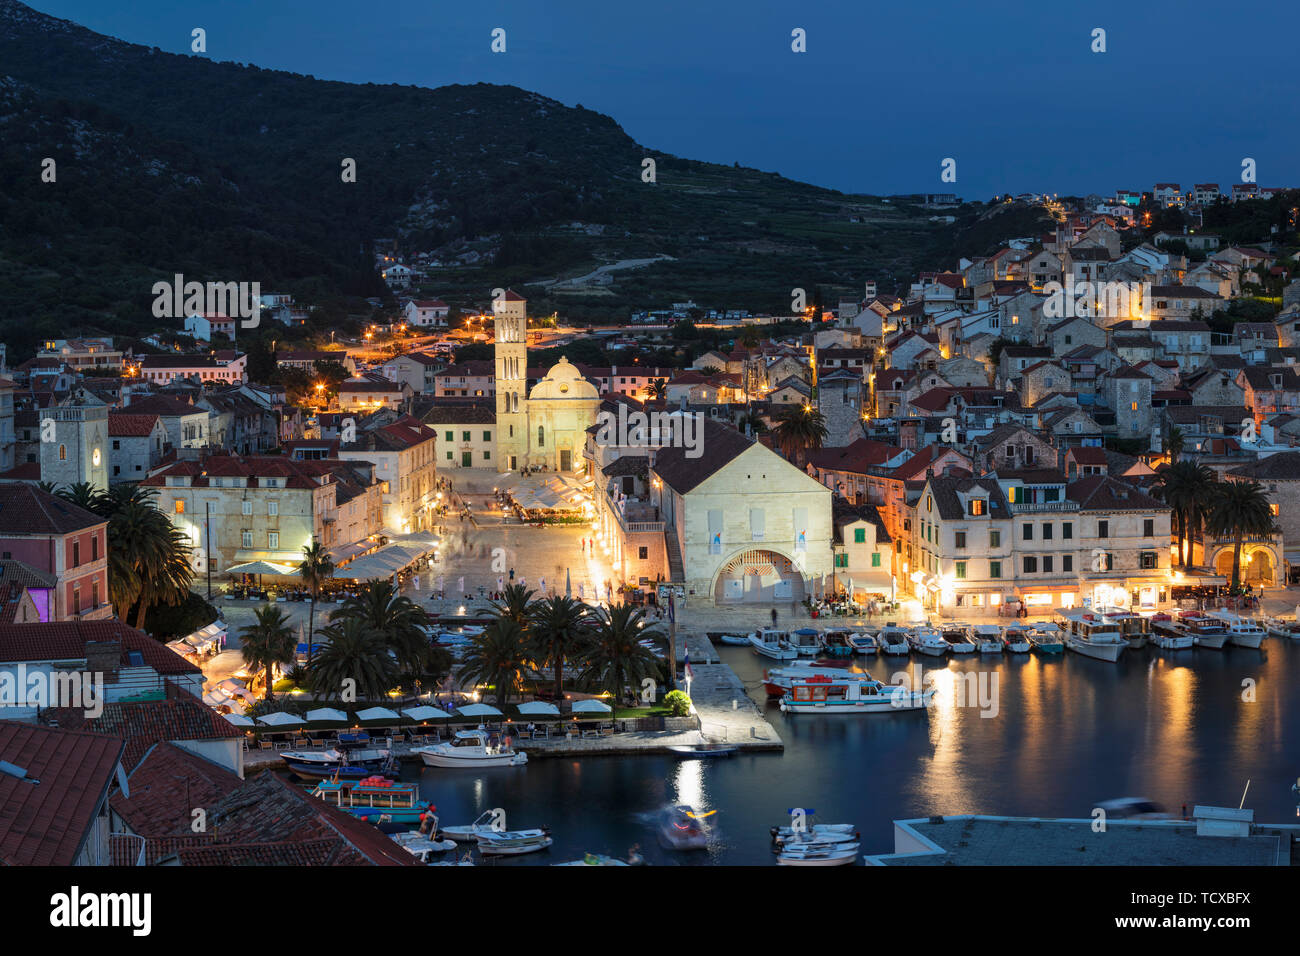 Vue sur le port de la vieille ville de Hvar, l'île de Hvar, Dalmatie, Croatie, Europe Banque D'Images